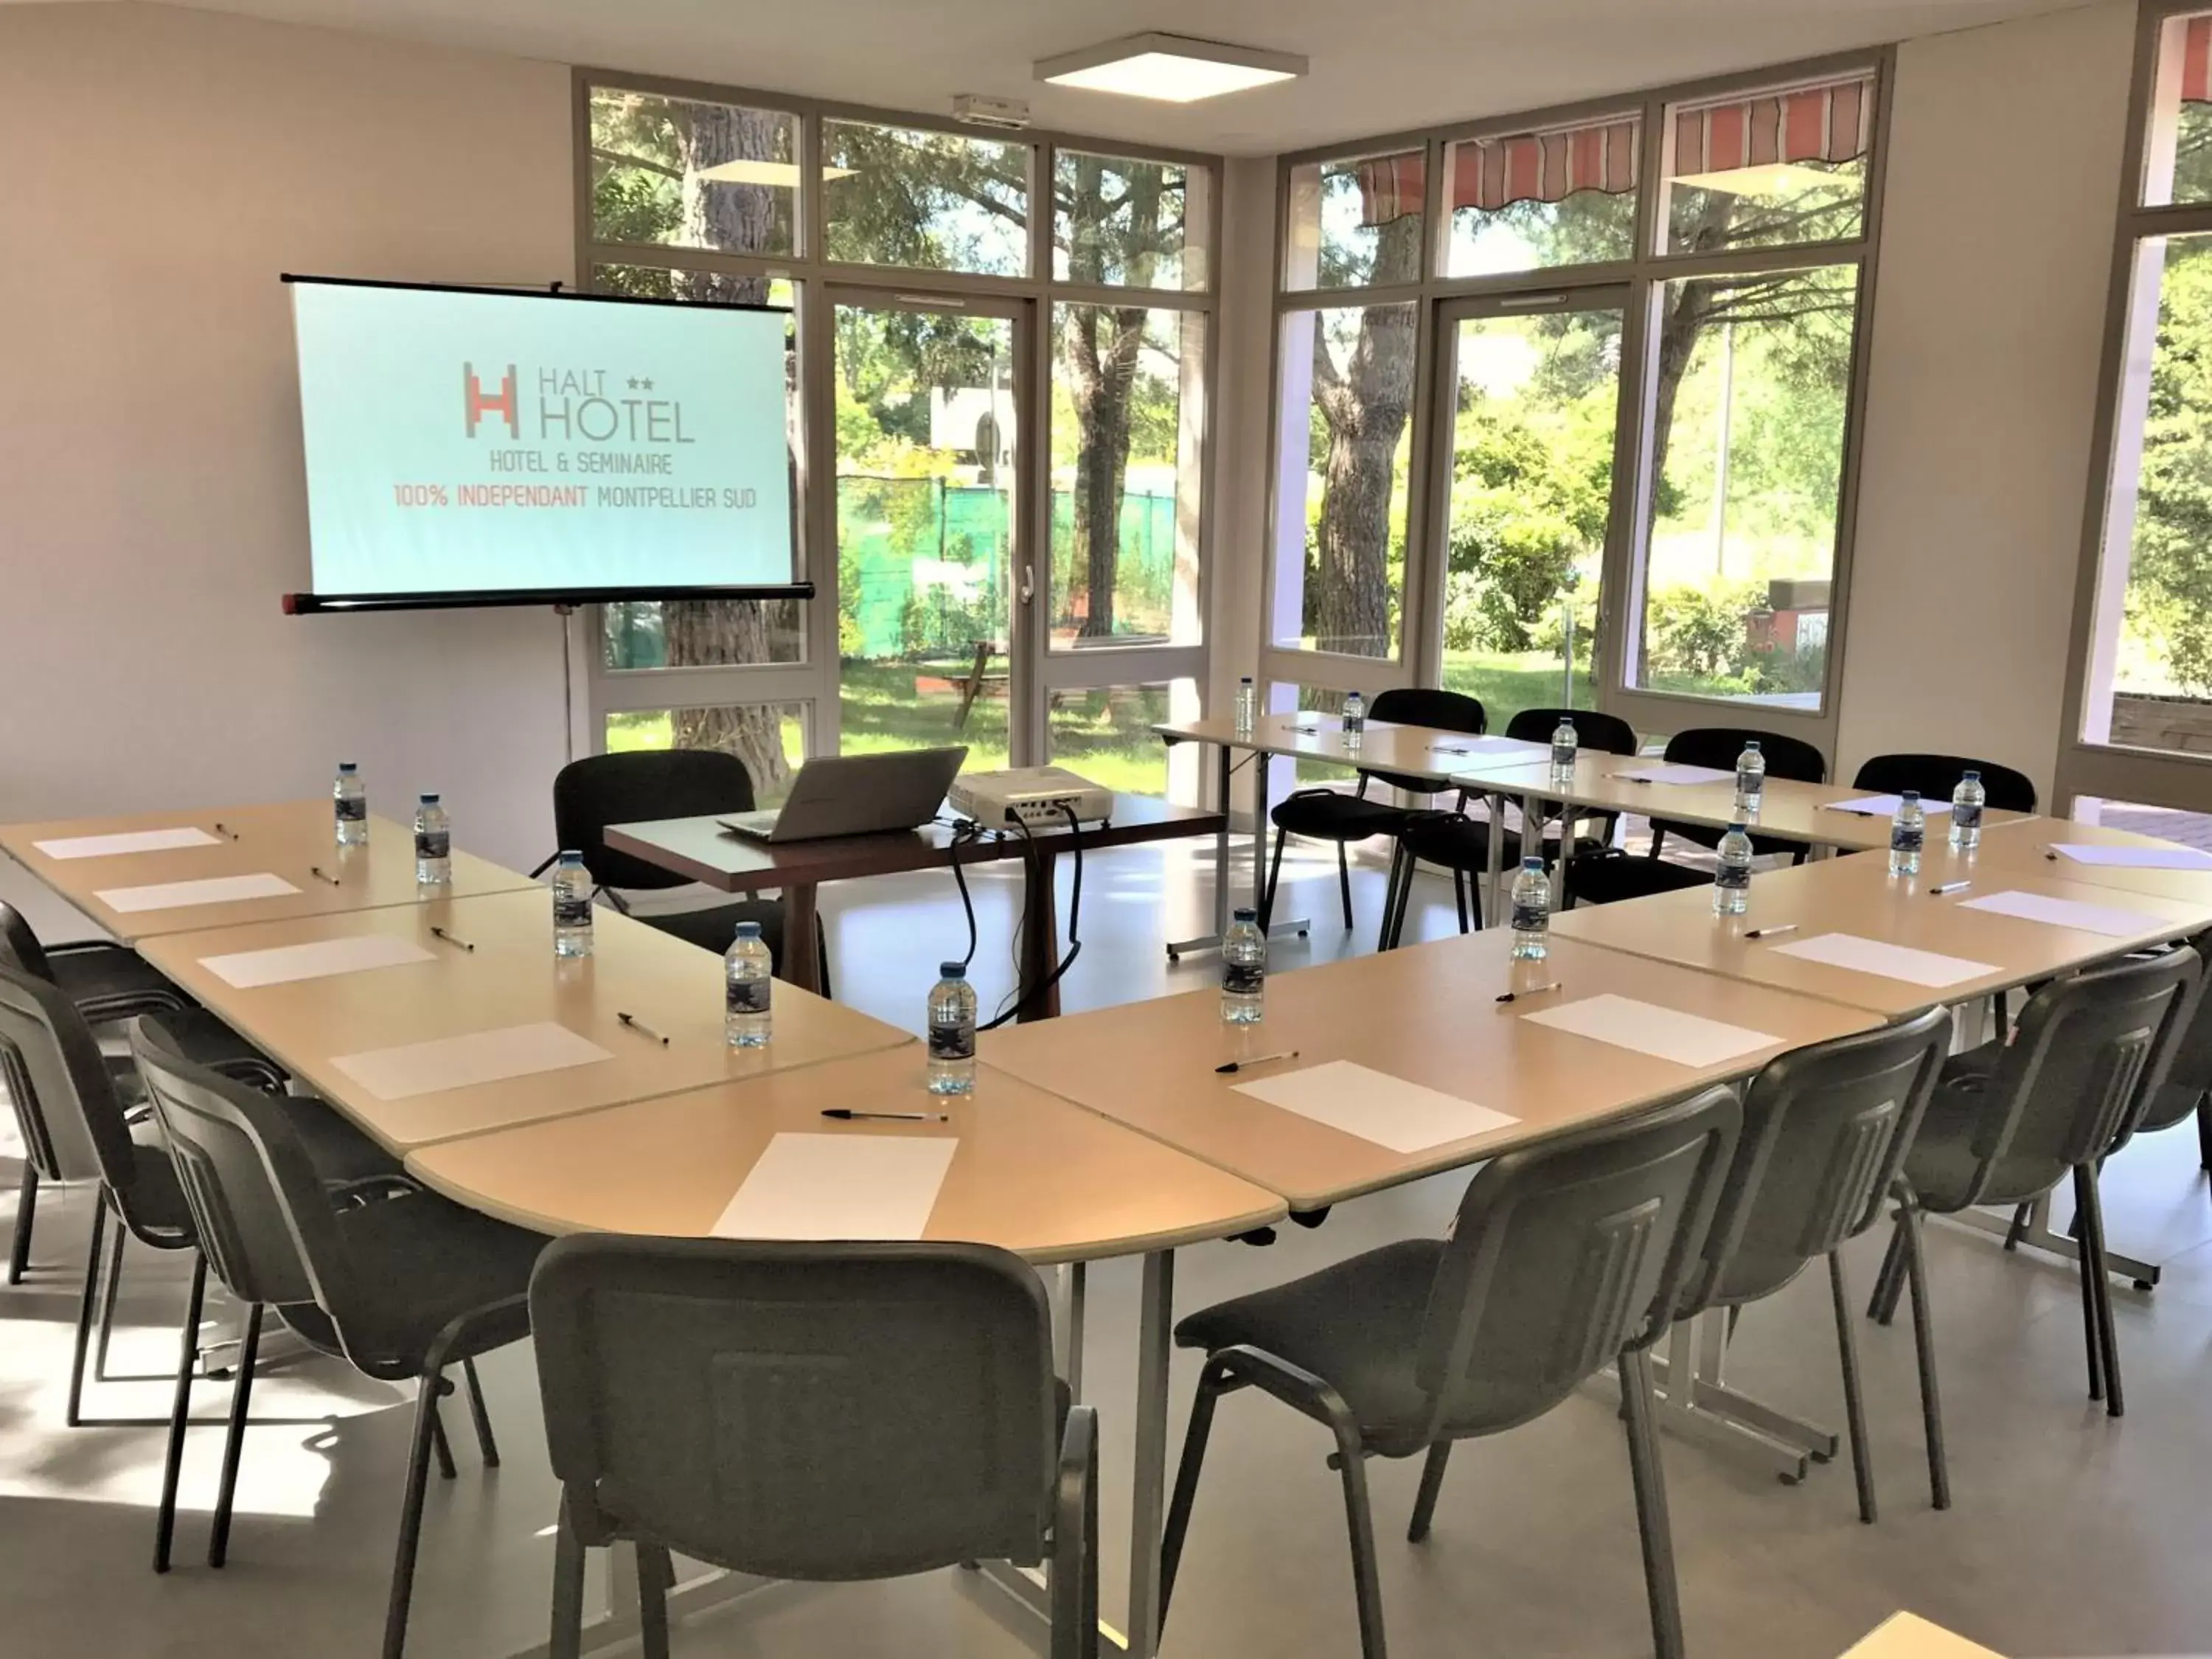 Meeting/conference room in HALT HOTEL - Choisissez l'Hôtellerie Indépendante